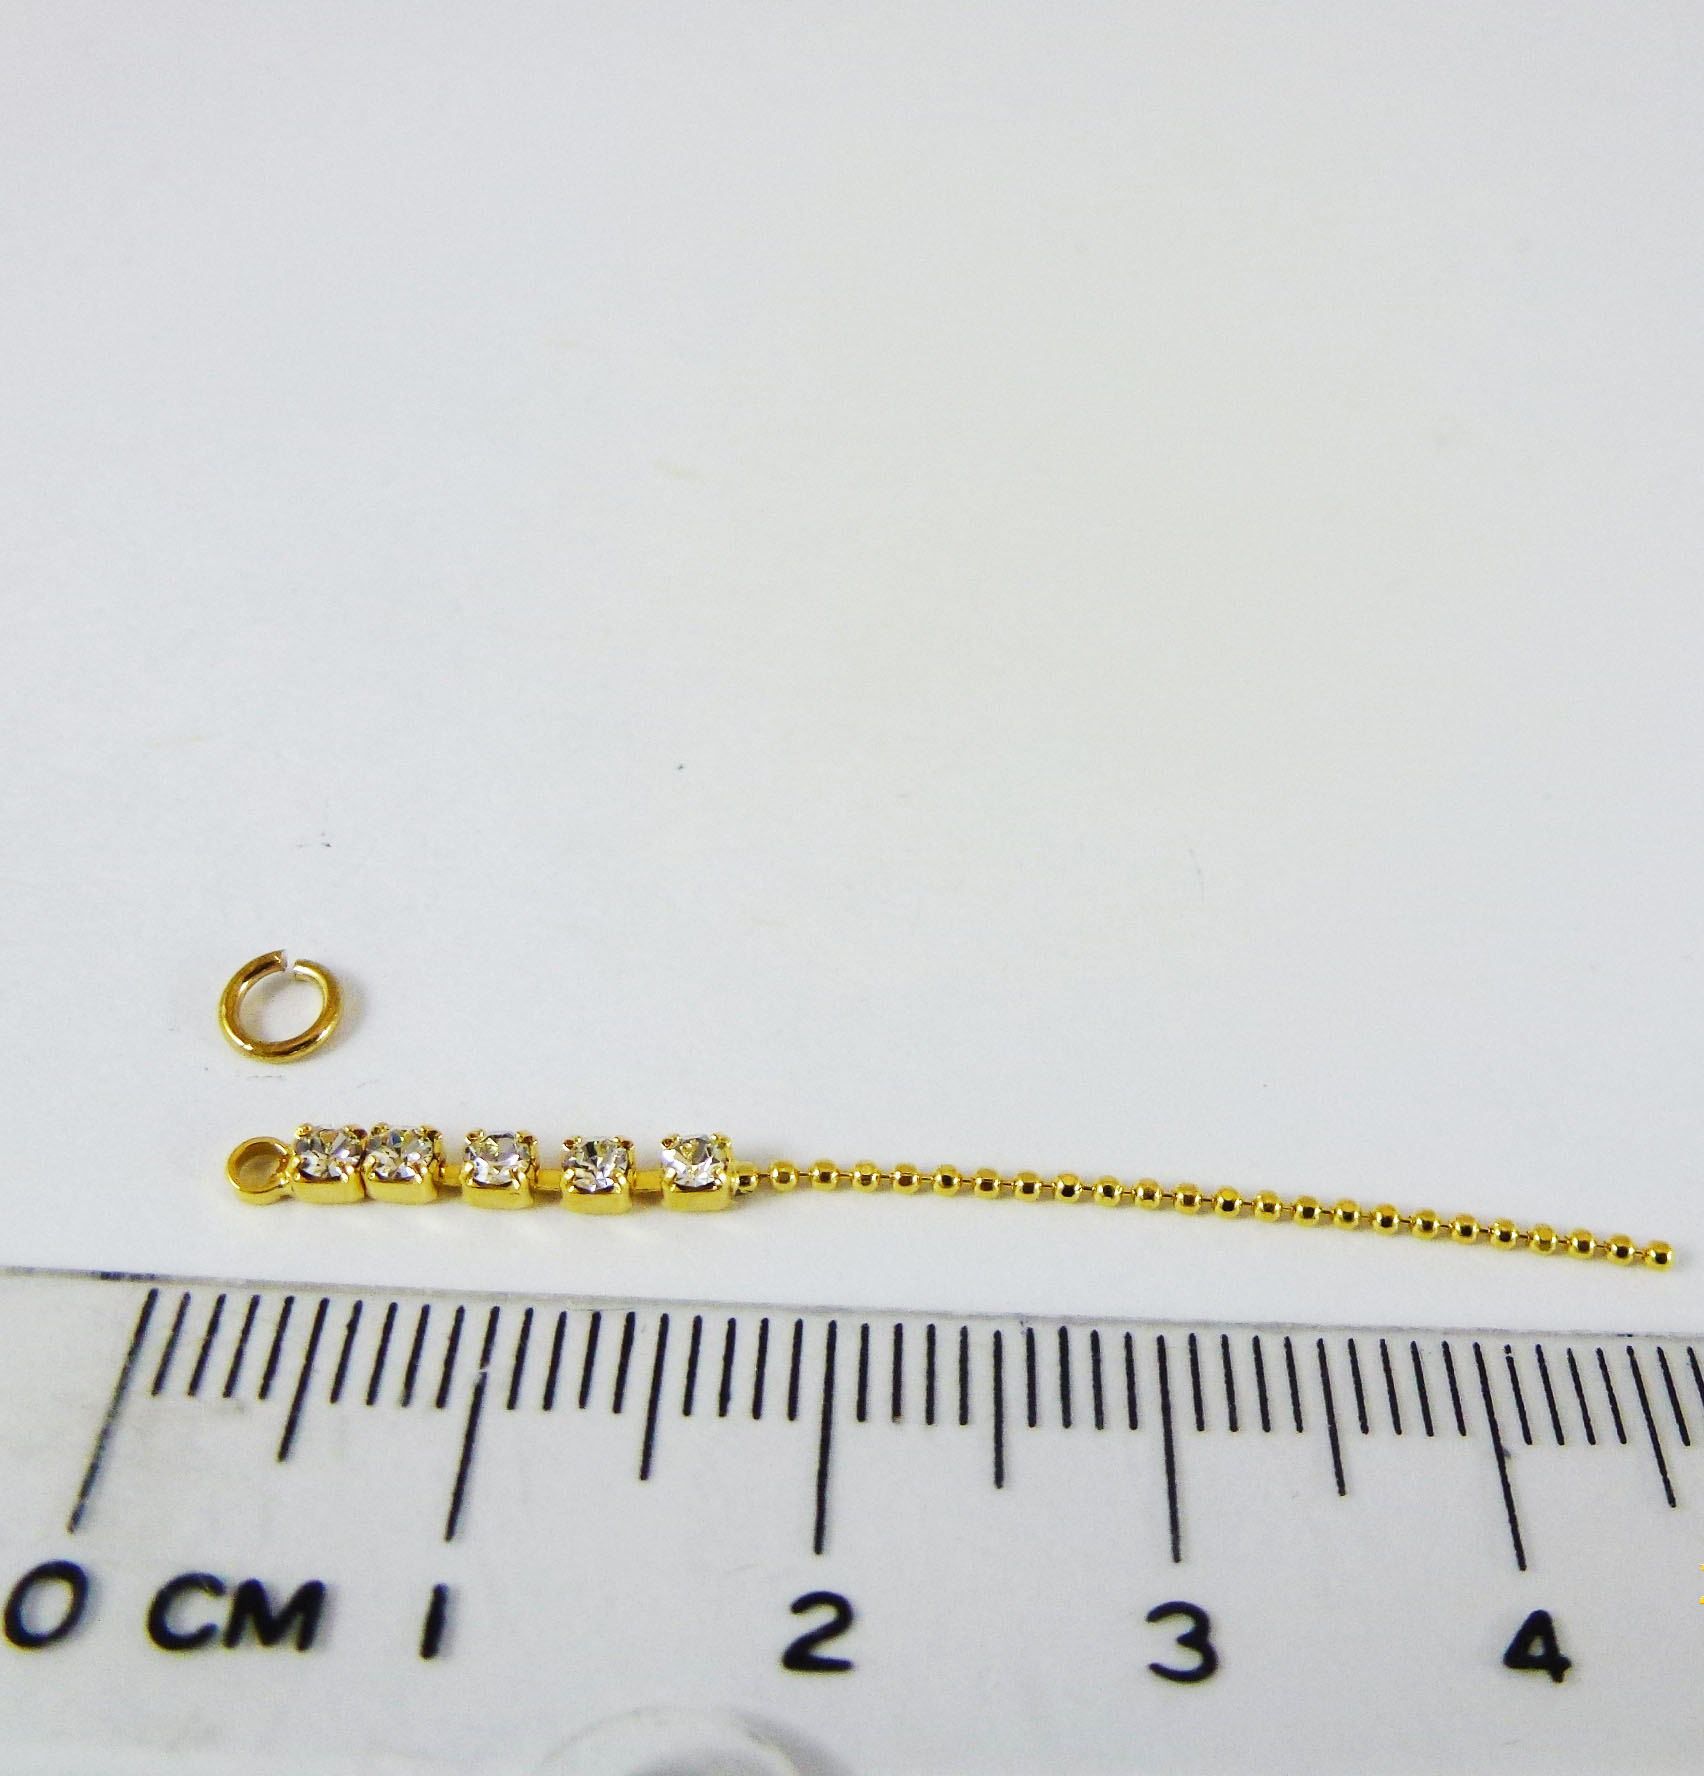 1MM金色鑽鍊+側面螞蟻